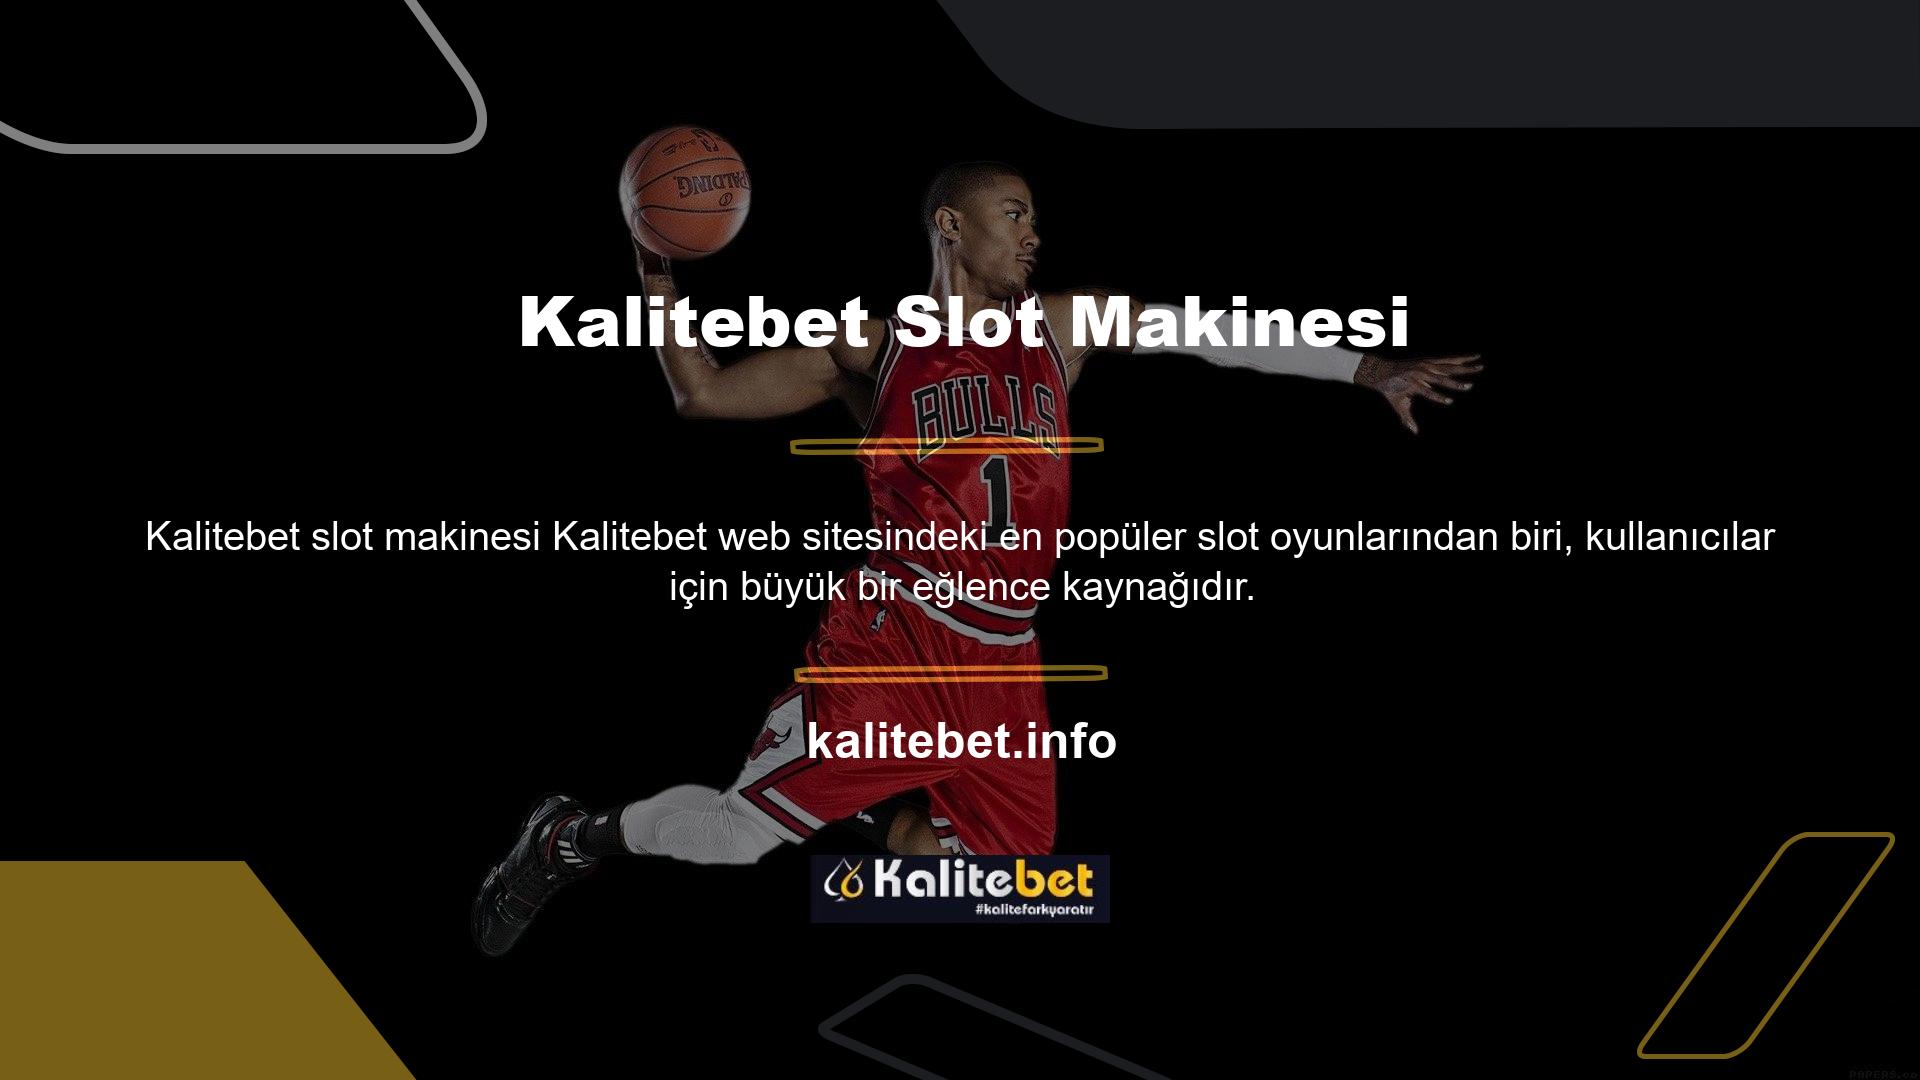 Kalitebet web sitesi bahis oynayabileceğiniz slot makinesi oyunları sunmaktadır